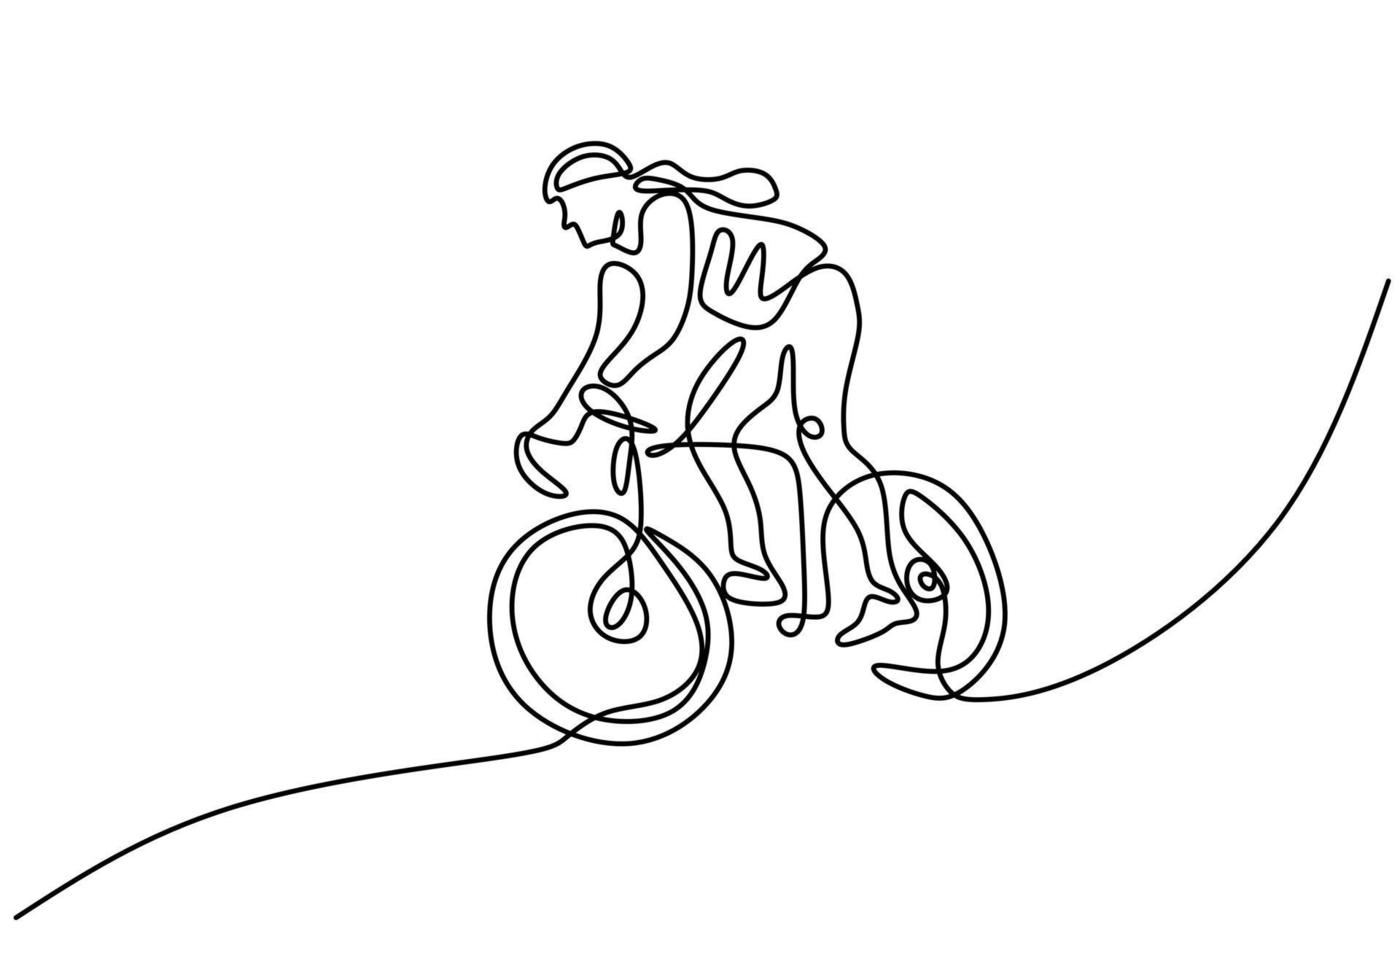 desenho de linha única contínua do trem foco do piloto de bicicleta jovem vetor